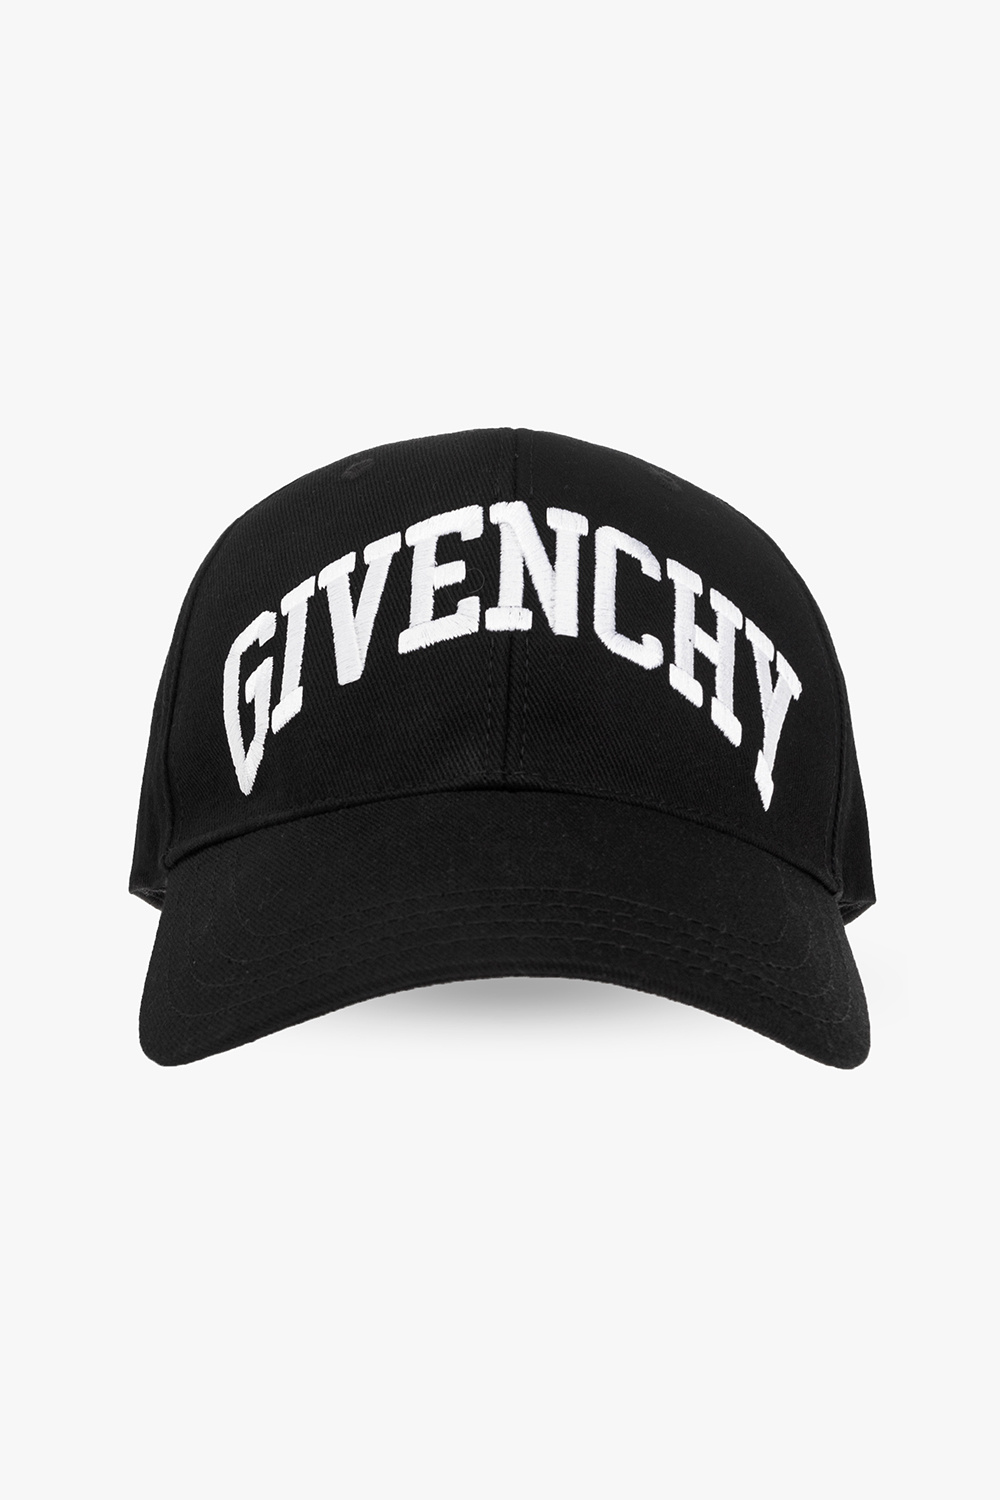 givenchy Schwarz Baseball cap